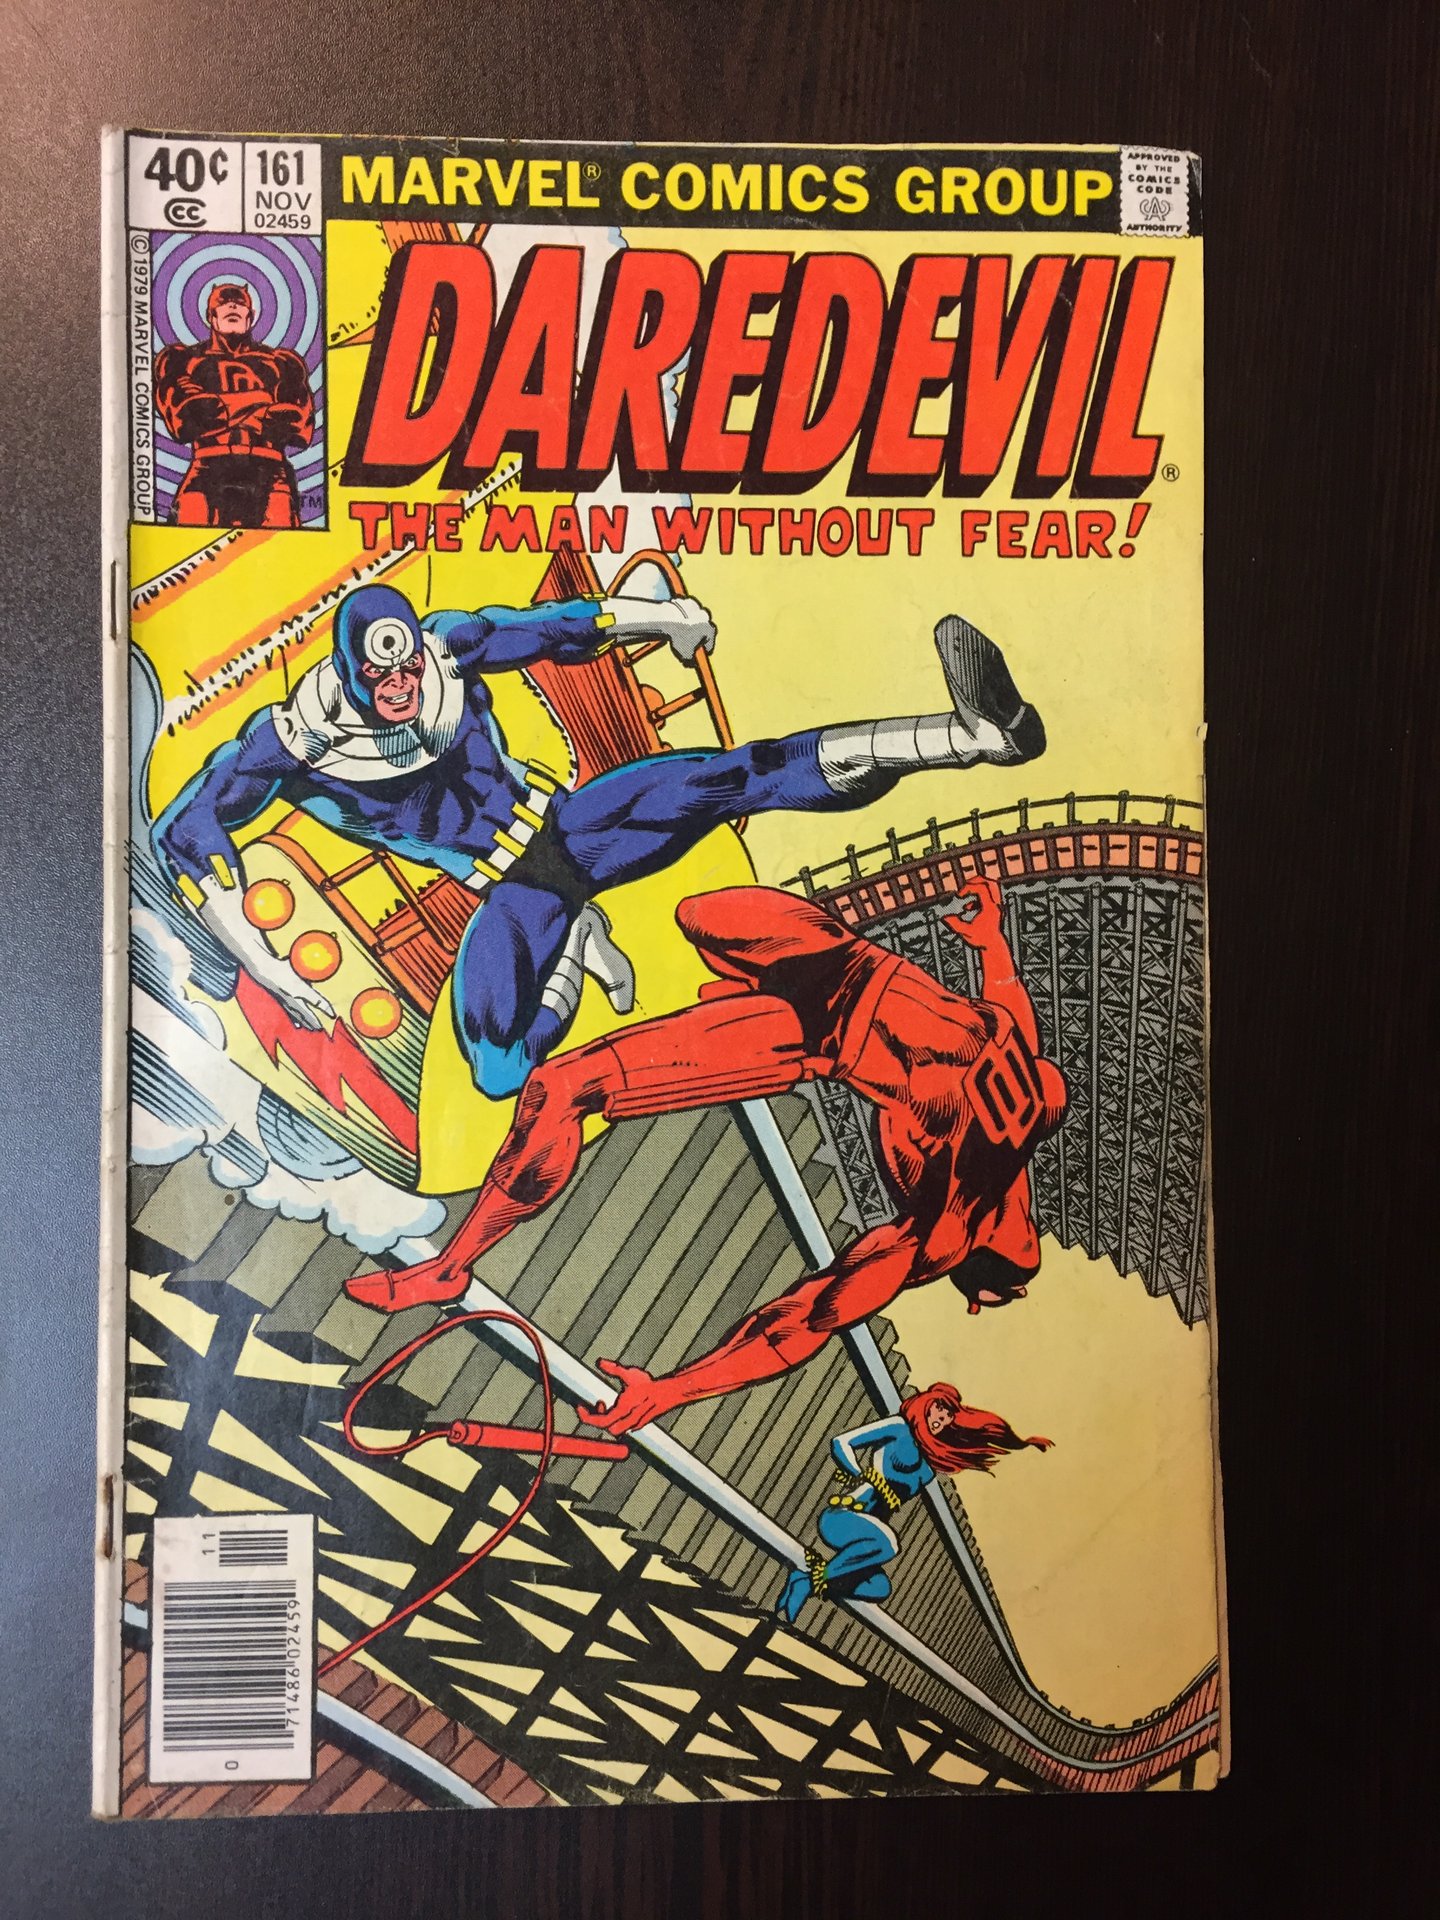 Daredevil #161 | Comic Books - Bronze Age, Marvel, Daredevil, Superhero ...